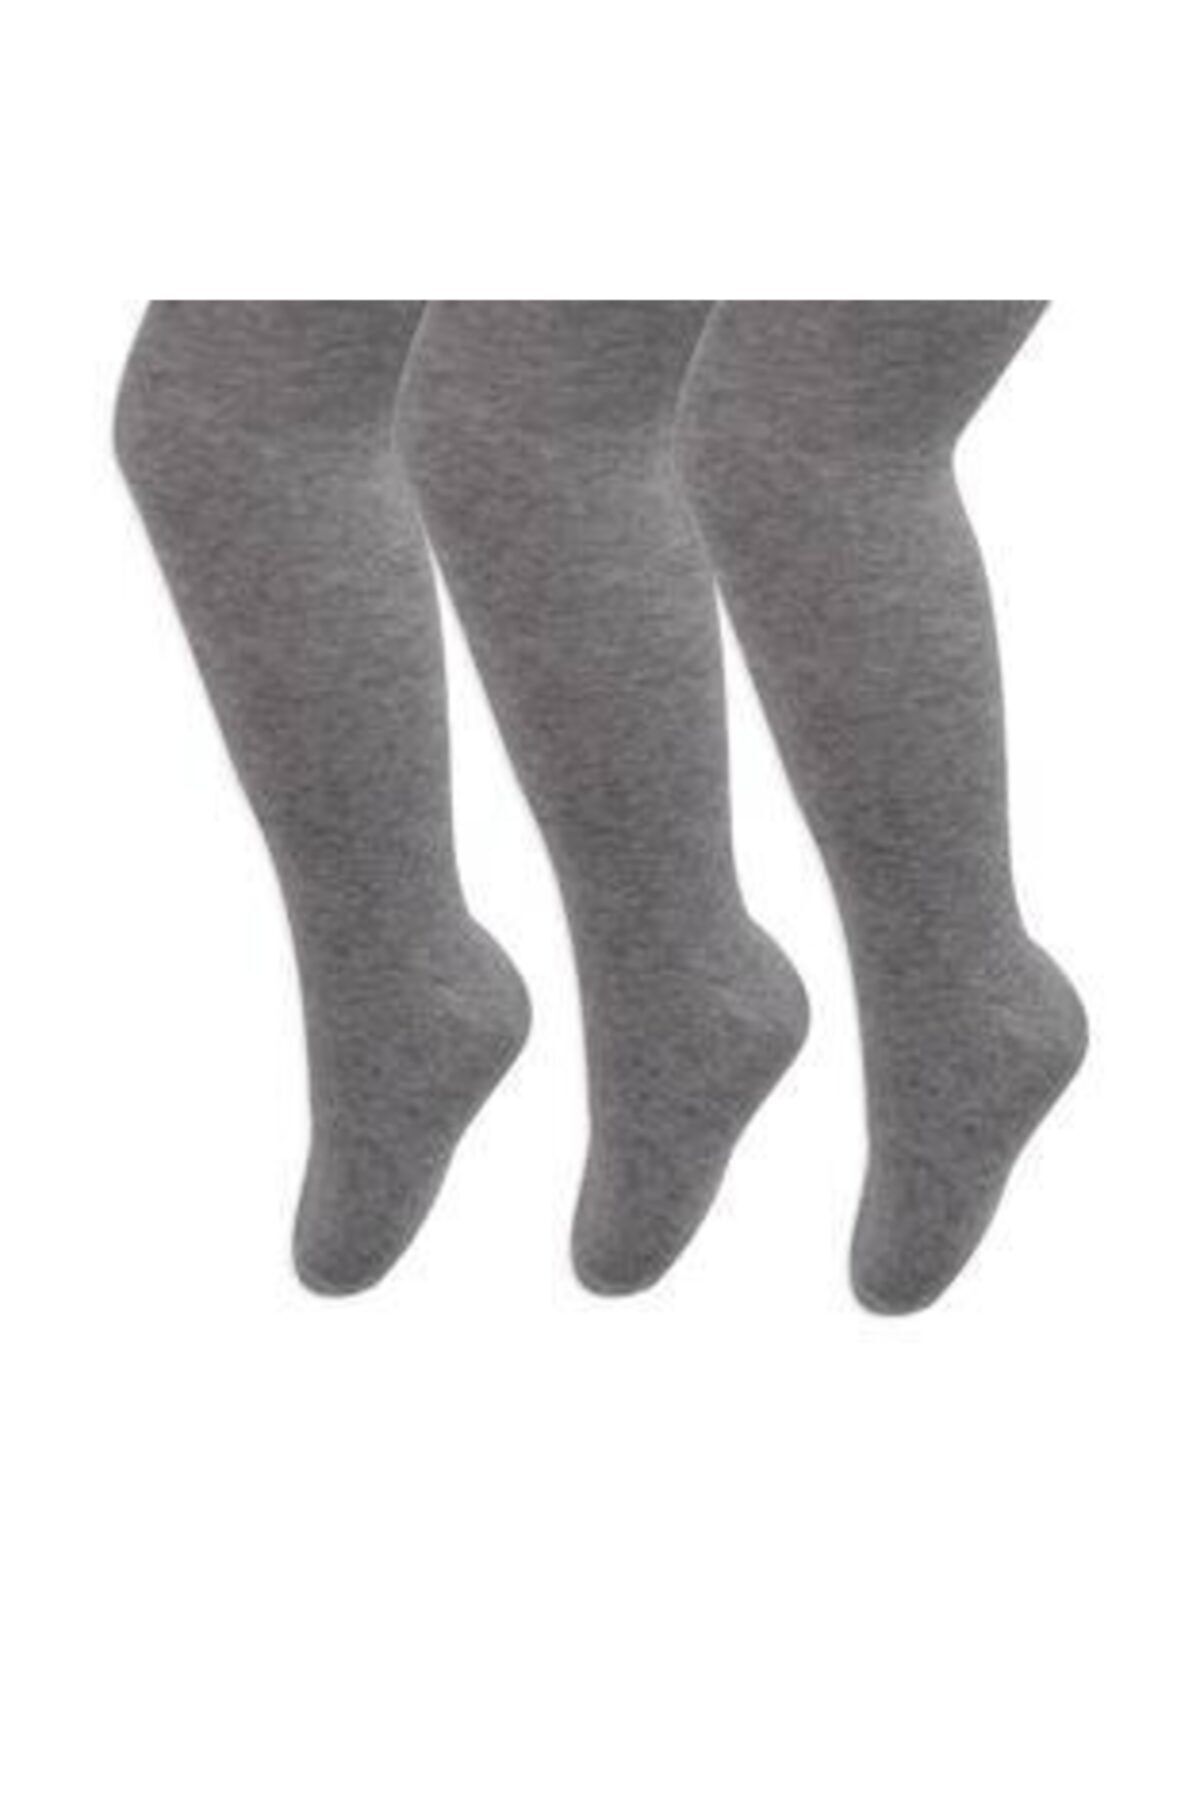 İpek Class Kız Çocuk Pamuklu Külotlu Çorap 3'lü Gri